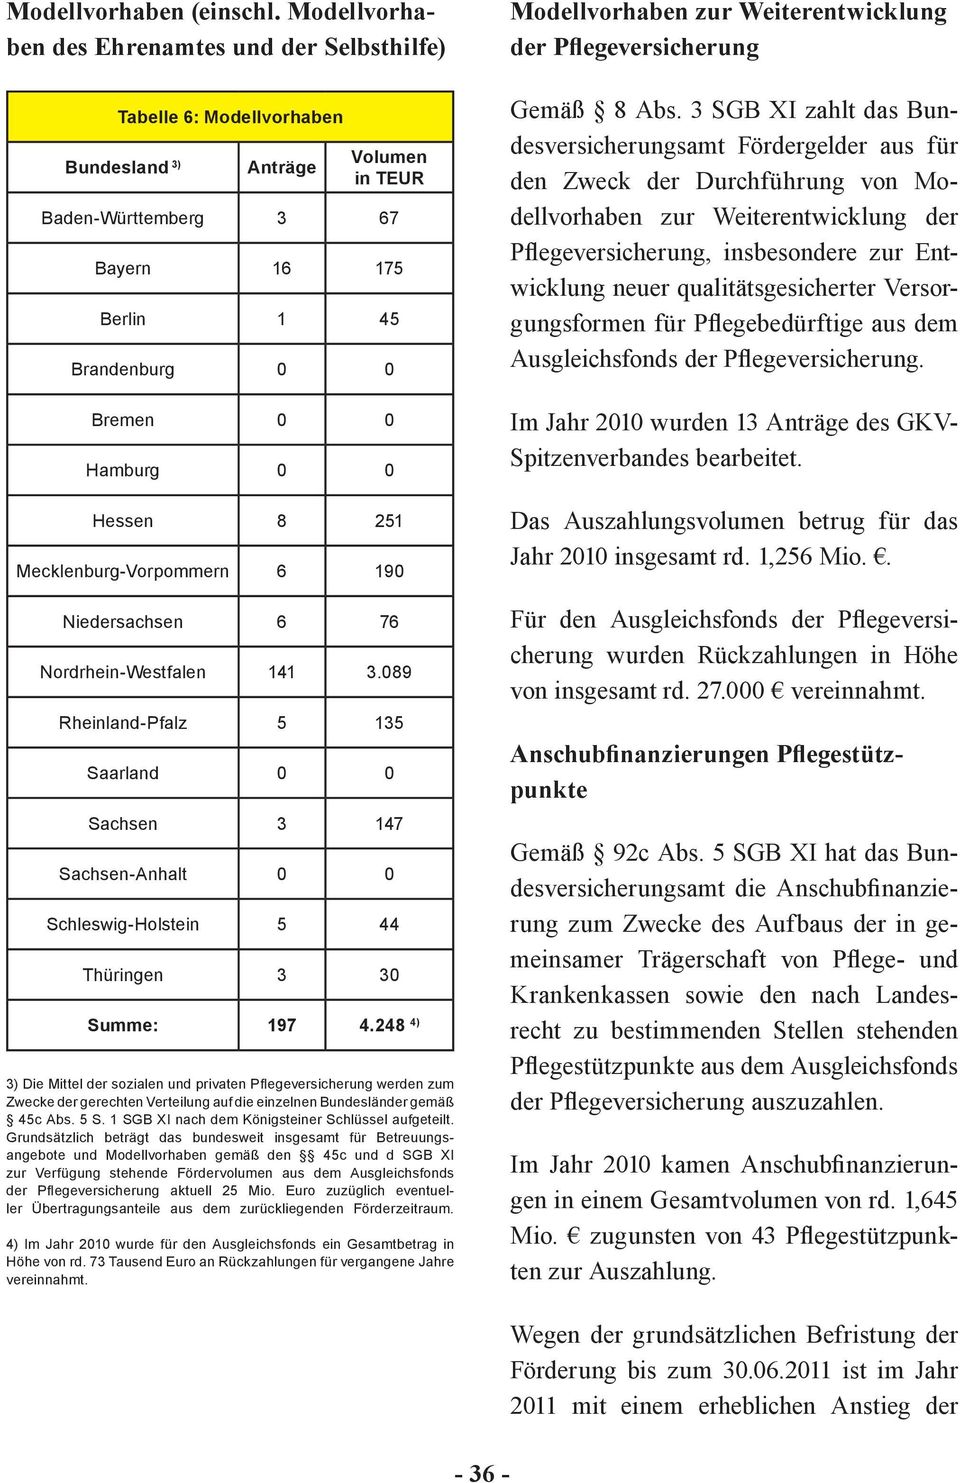 0 0 Hessen 8 251 Mecklenburg-Vorpommern 6 190 Niedersachsen 6 76 Nordrhein-Westfalen 141 3.